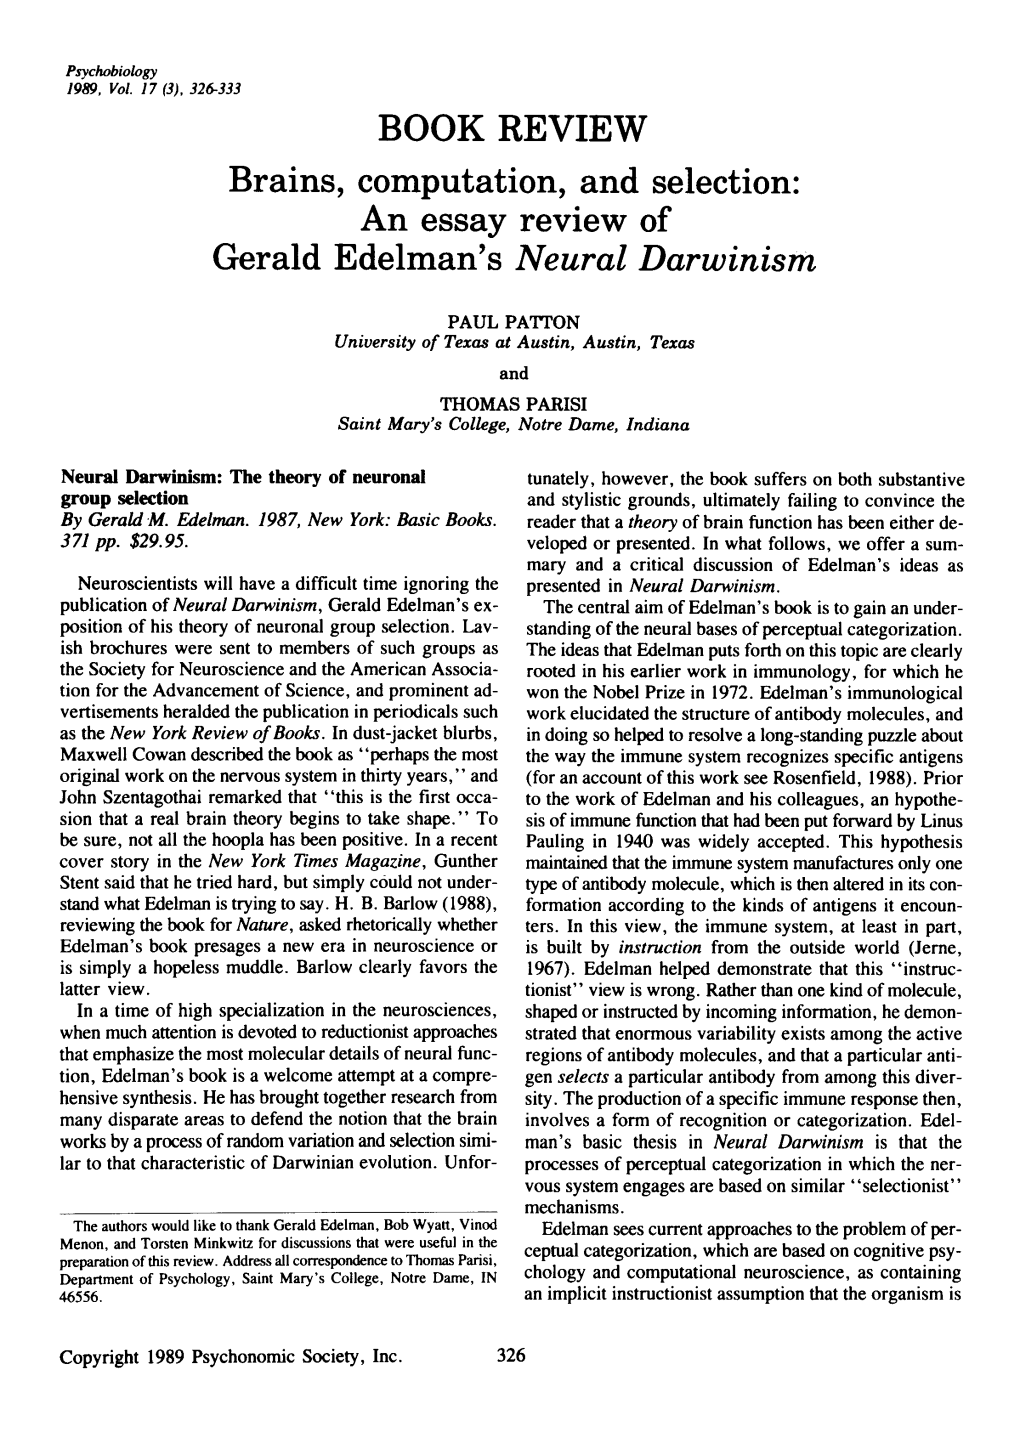 An Essay Review of Gerald Edelman's Neural Darwinism